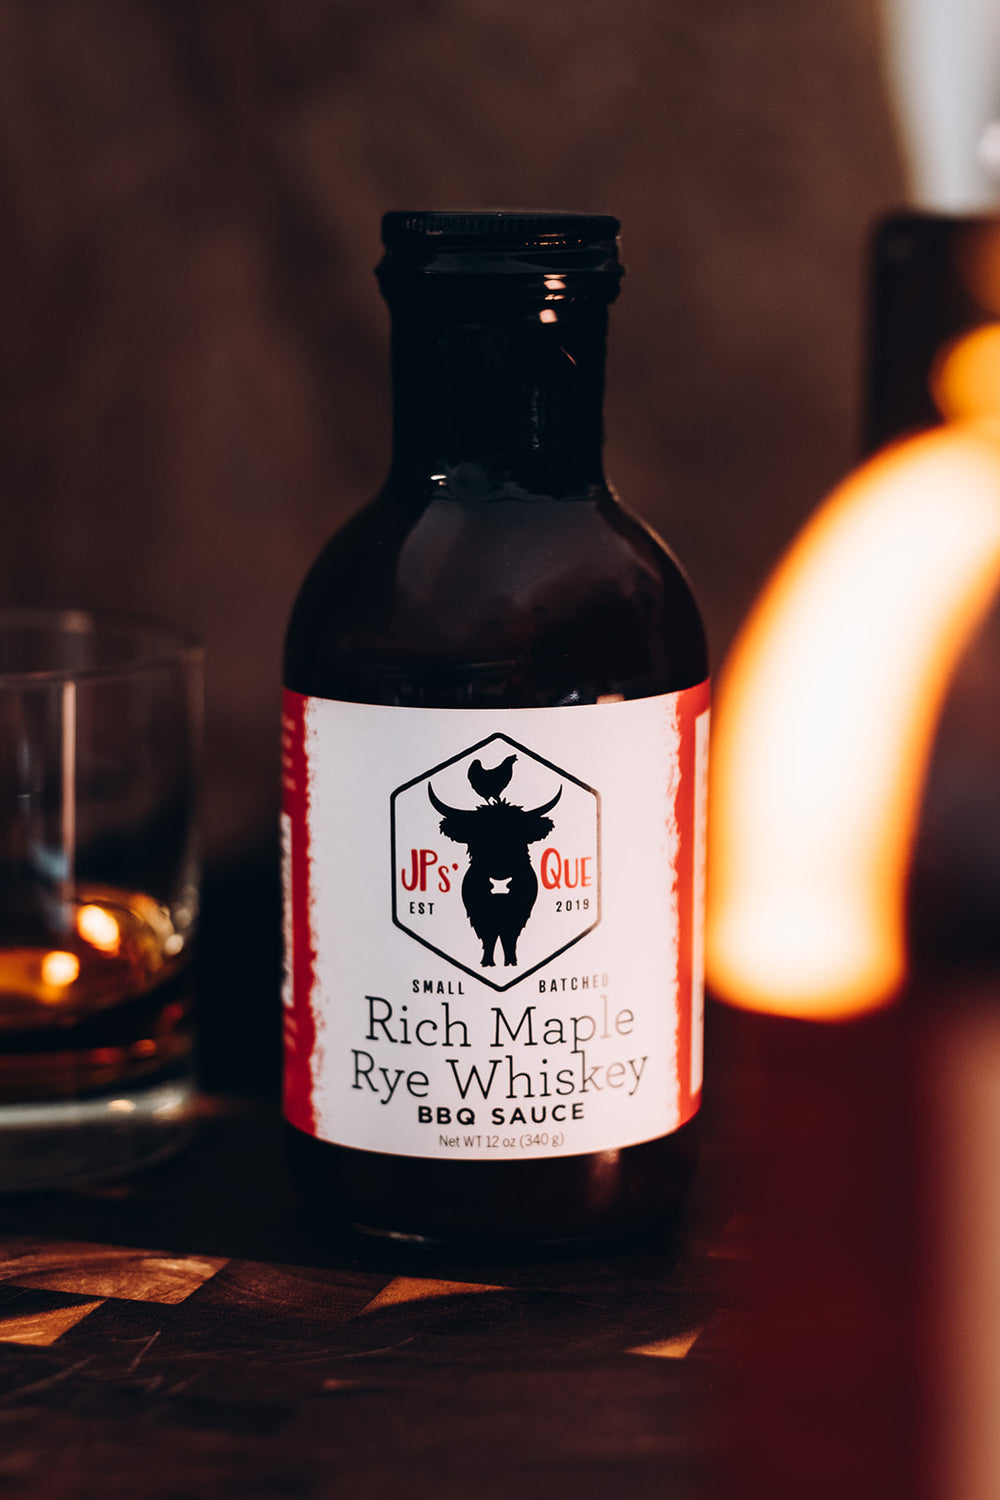 Rich Maple Rye Whiskey